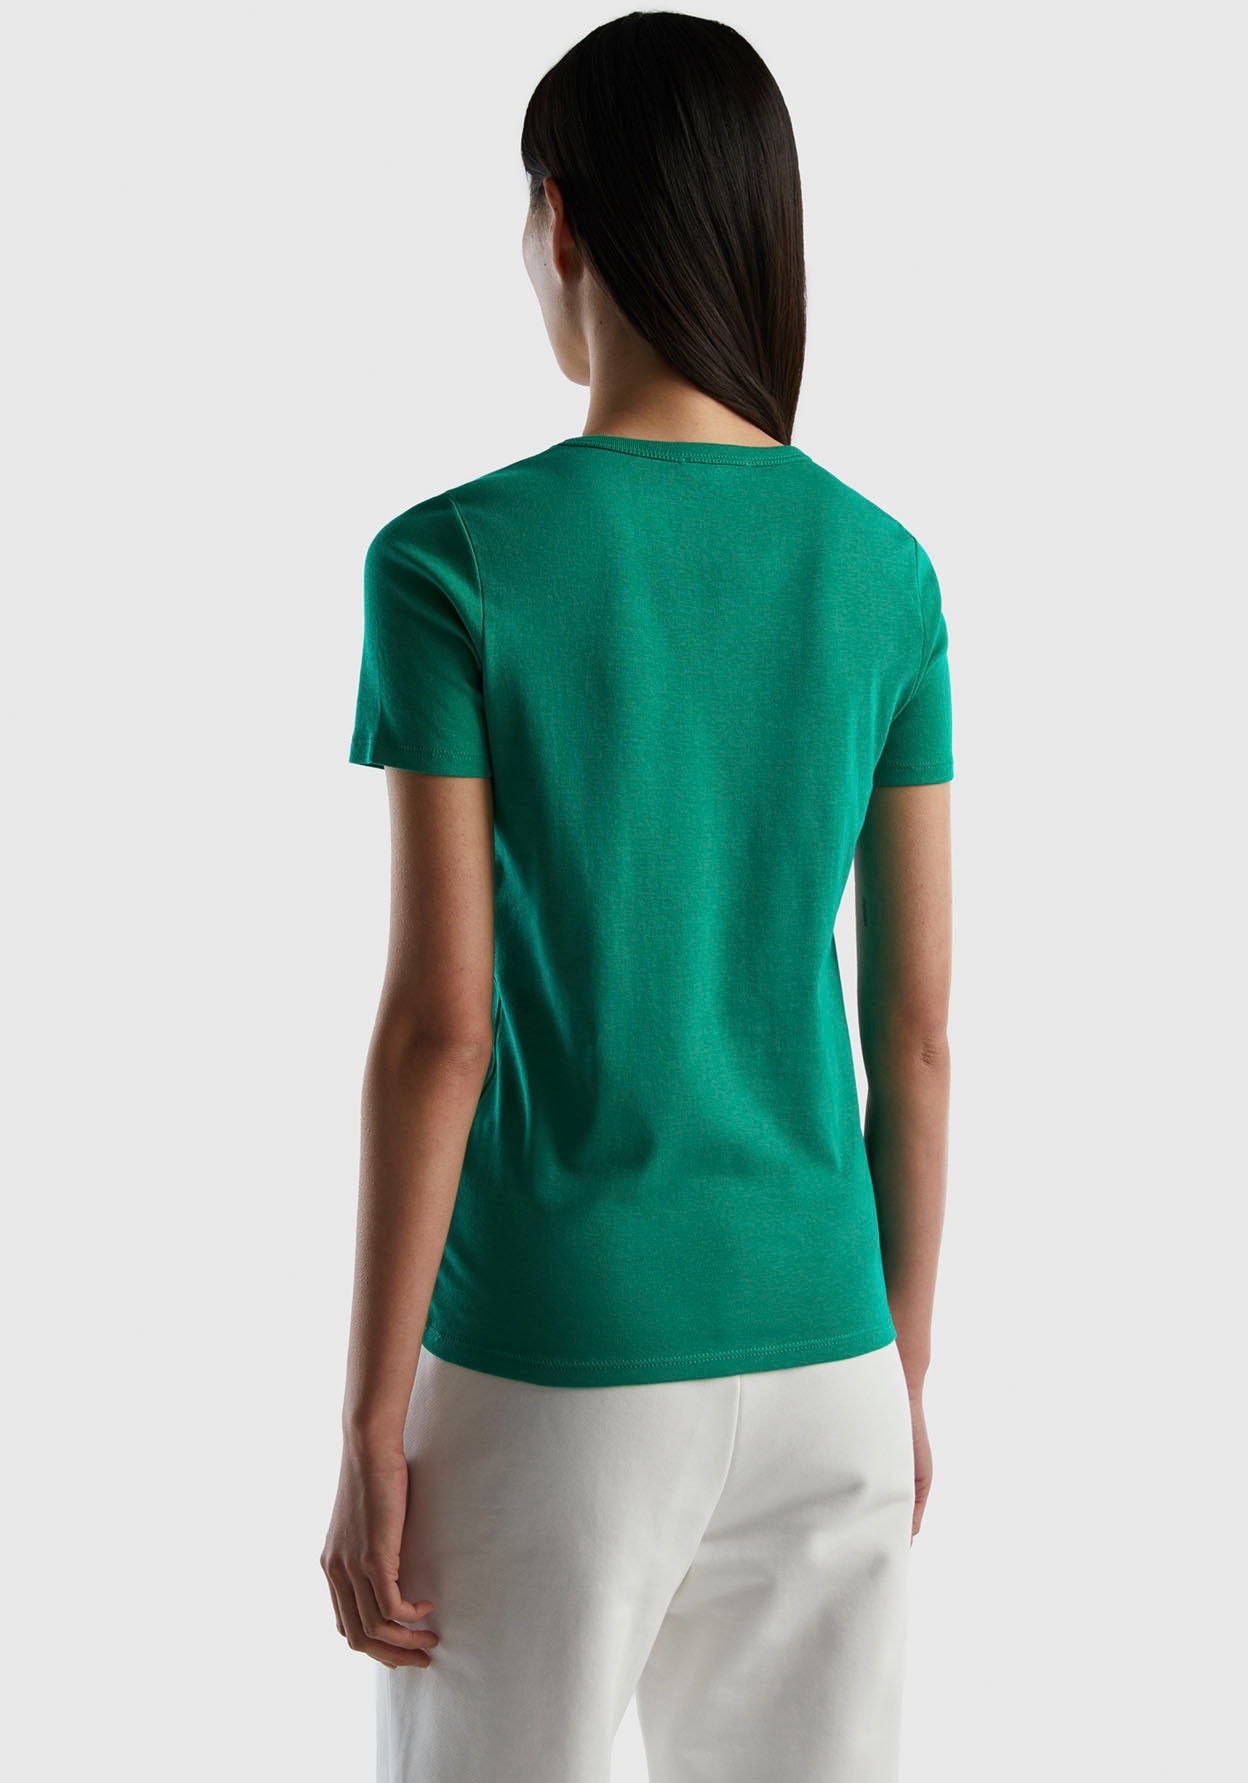 Label-Print bequem Benetton T-Shirt, glitzerndem Colors vorn of mit kaufen United